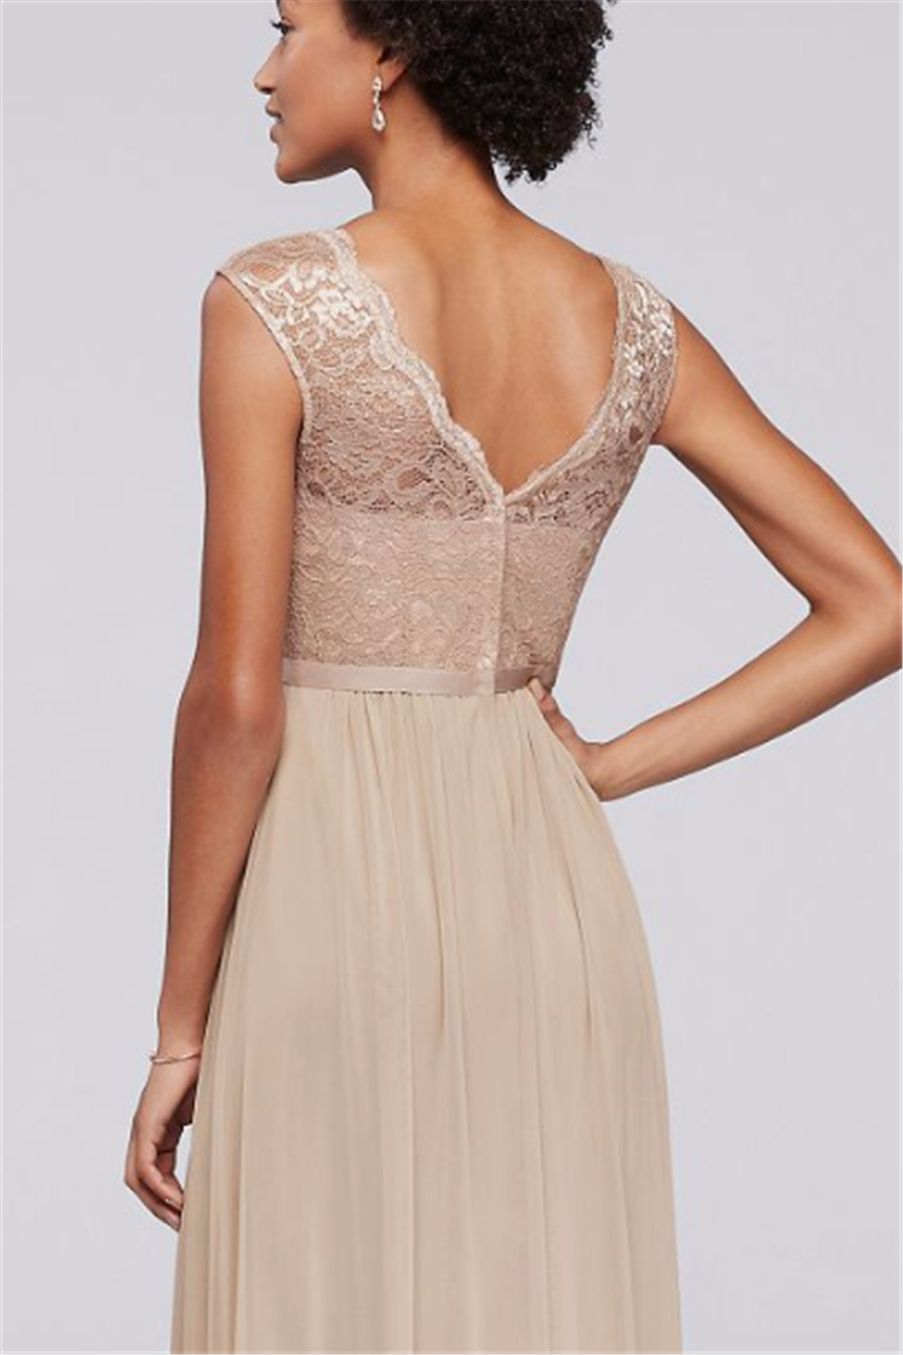 Long Champagne Chiffon BrideMaid платье с кружевным лифом F19328M свадебное платье вечернее платье вечернее платье